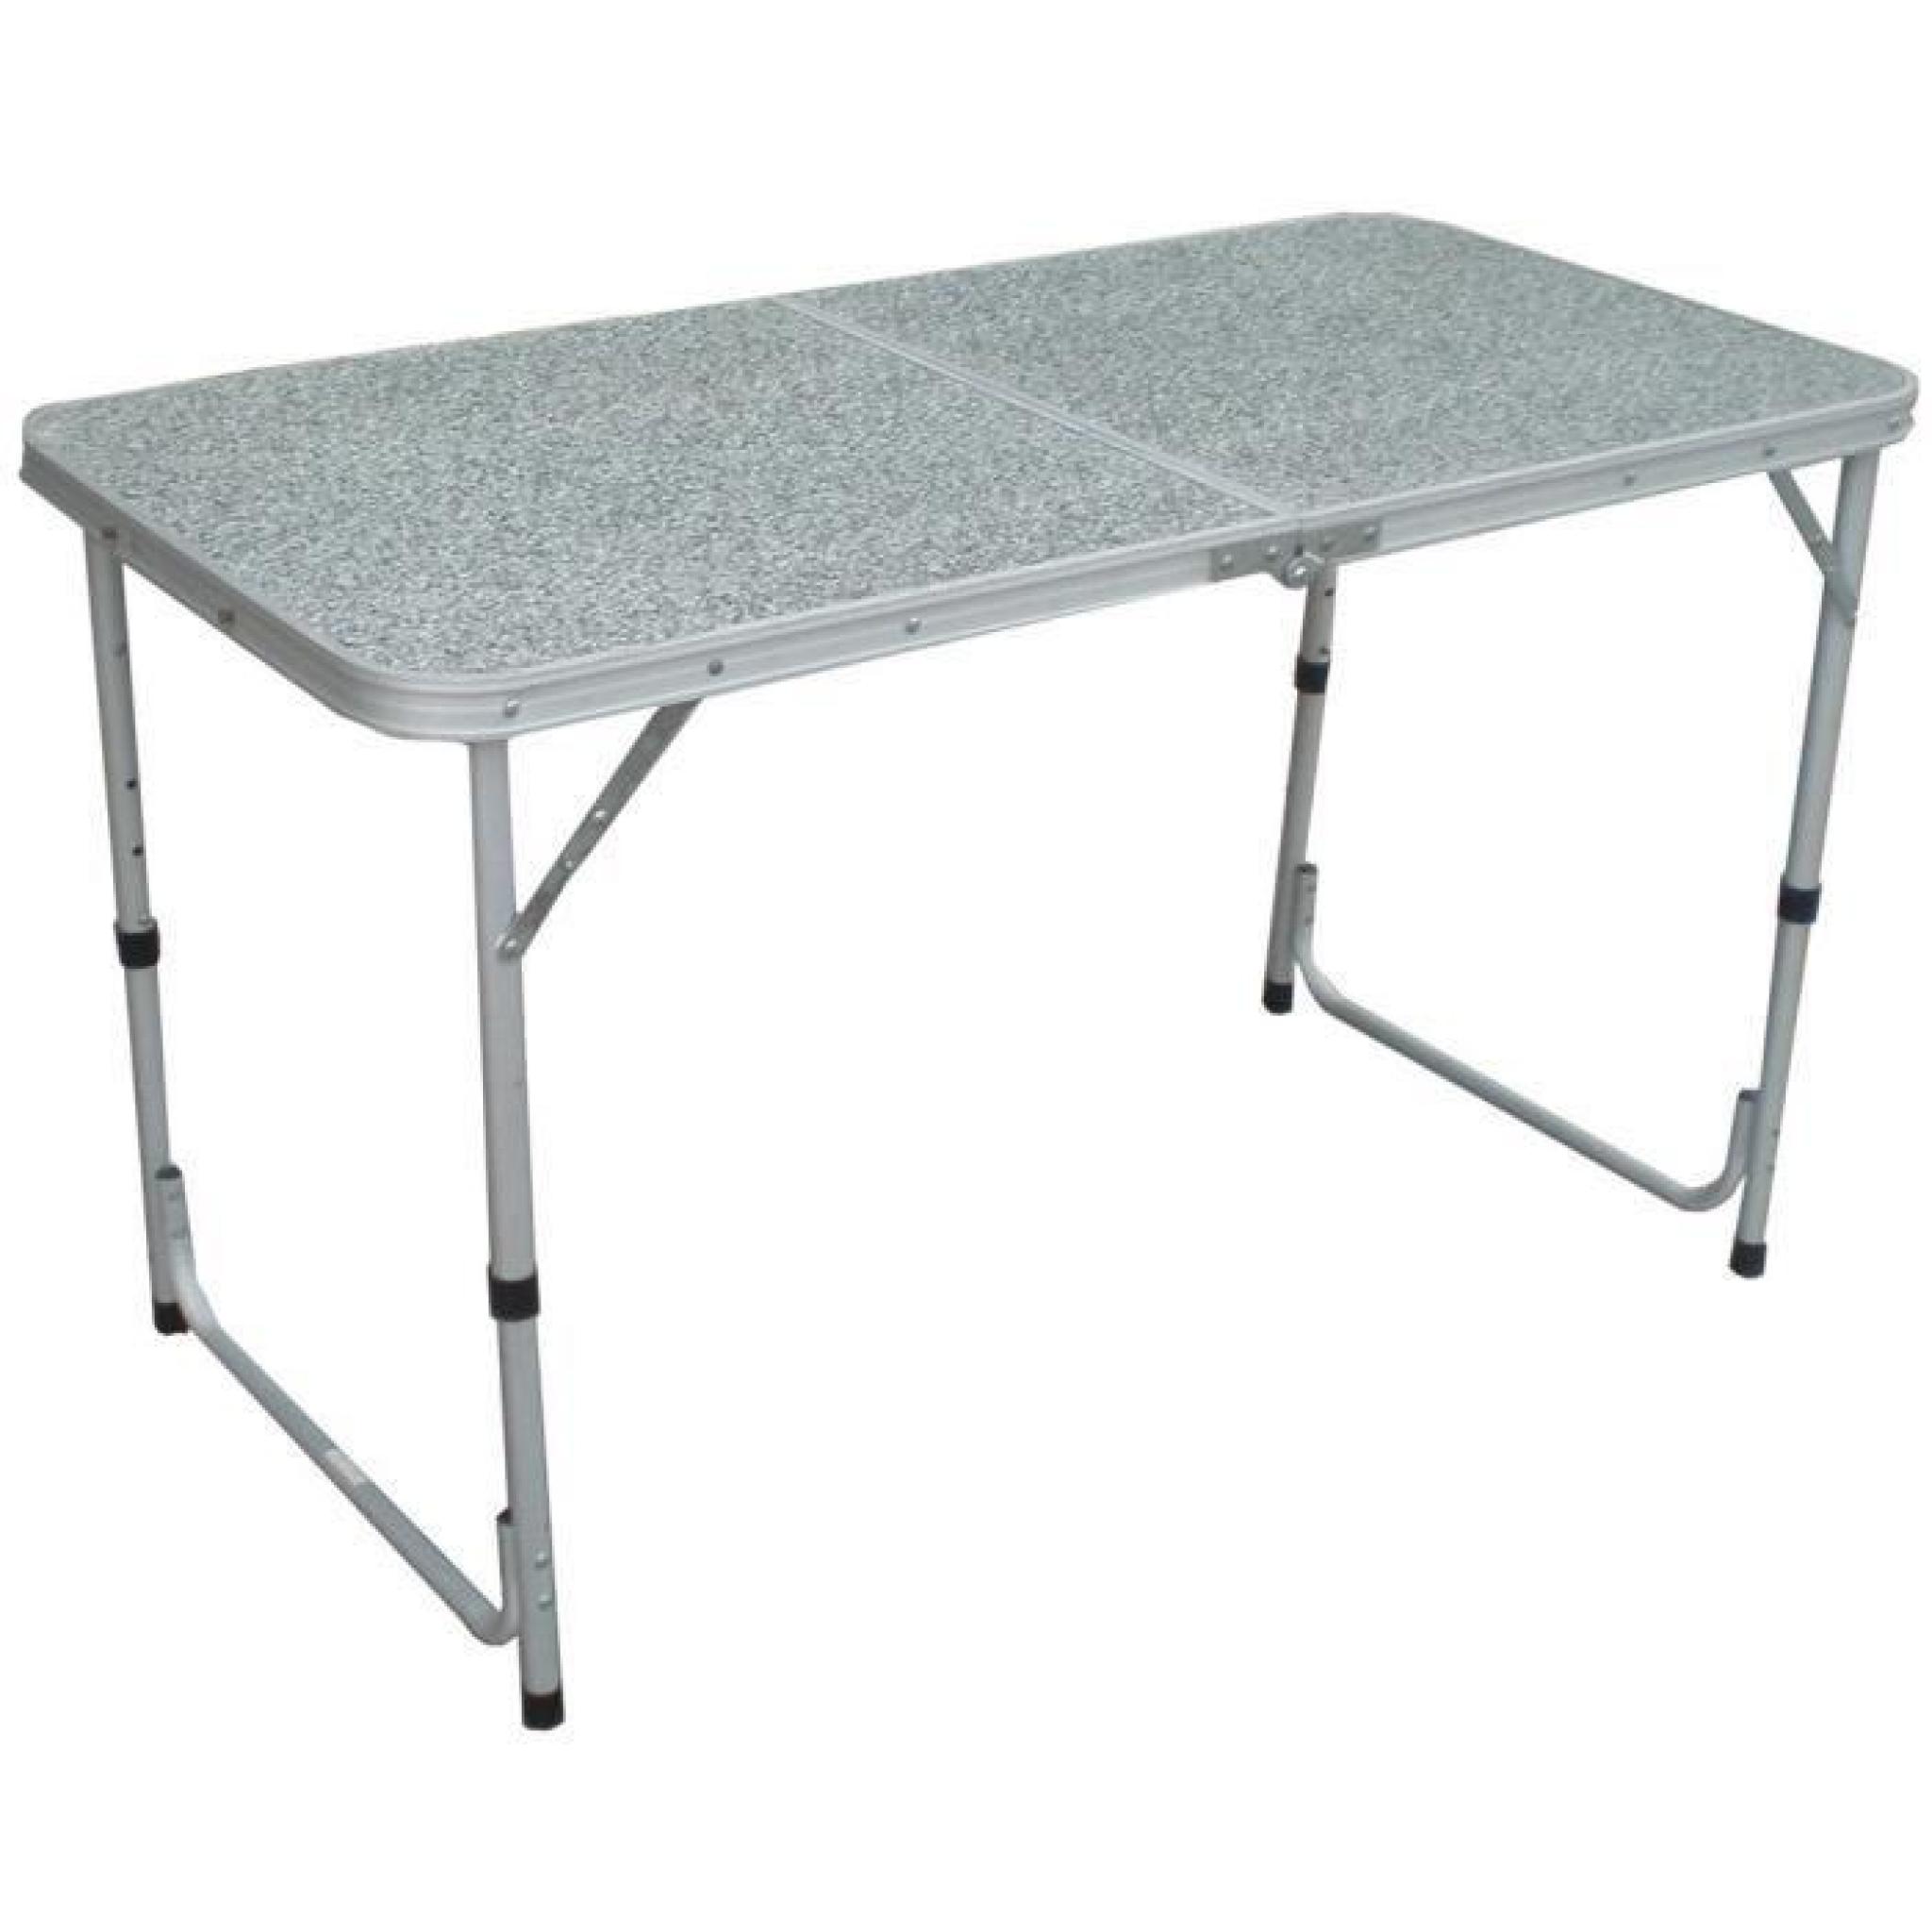 Table pliante rectangulaire en aluminium avec plateau en formica - Dim : H 74 x L 120 x P 90 cm